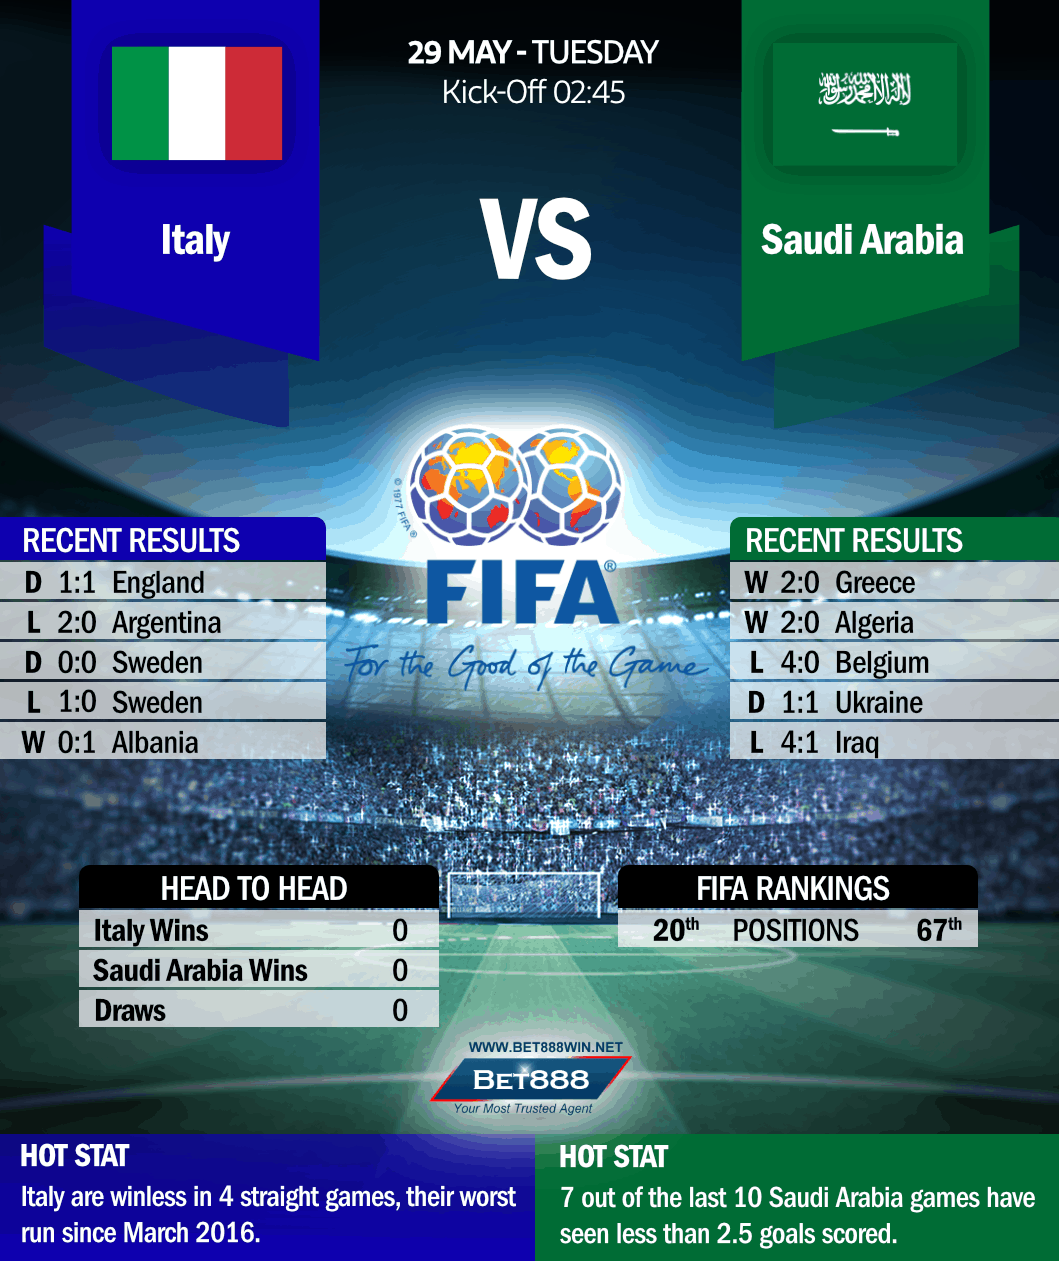 Italy vs Saudi Arabia 29/05/18